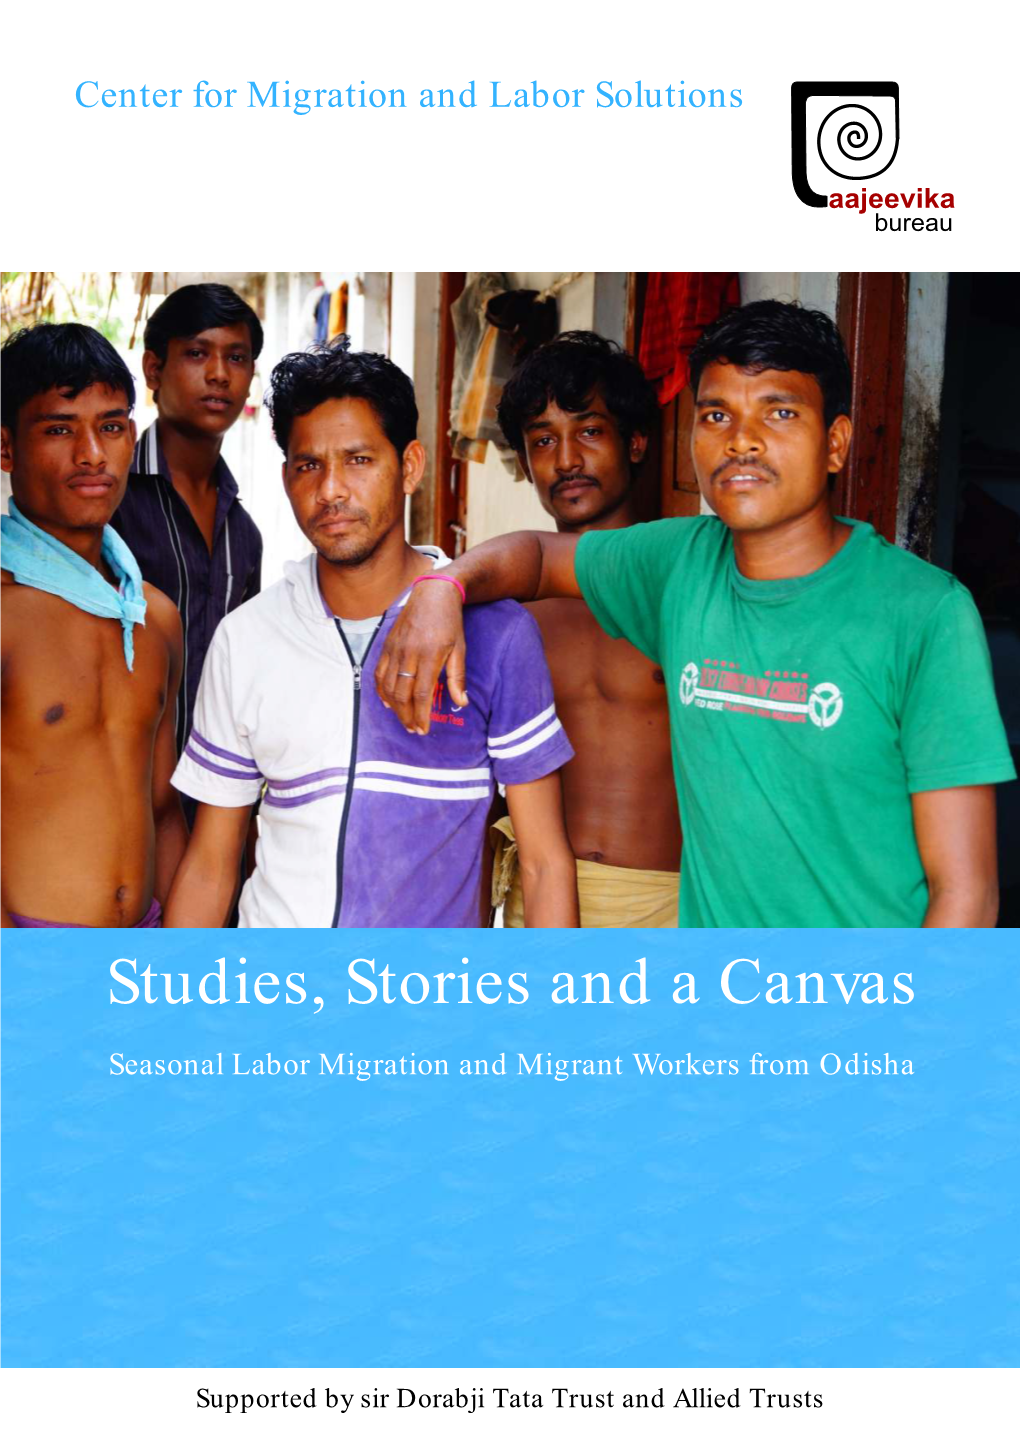 Odisha State Migration Profile Report